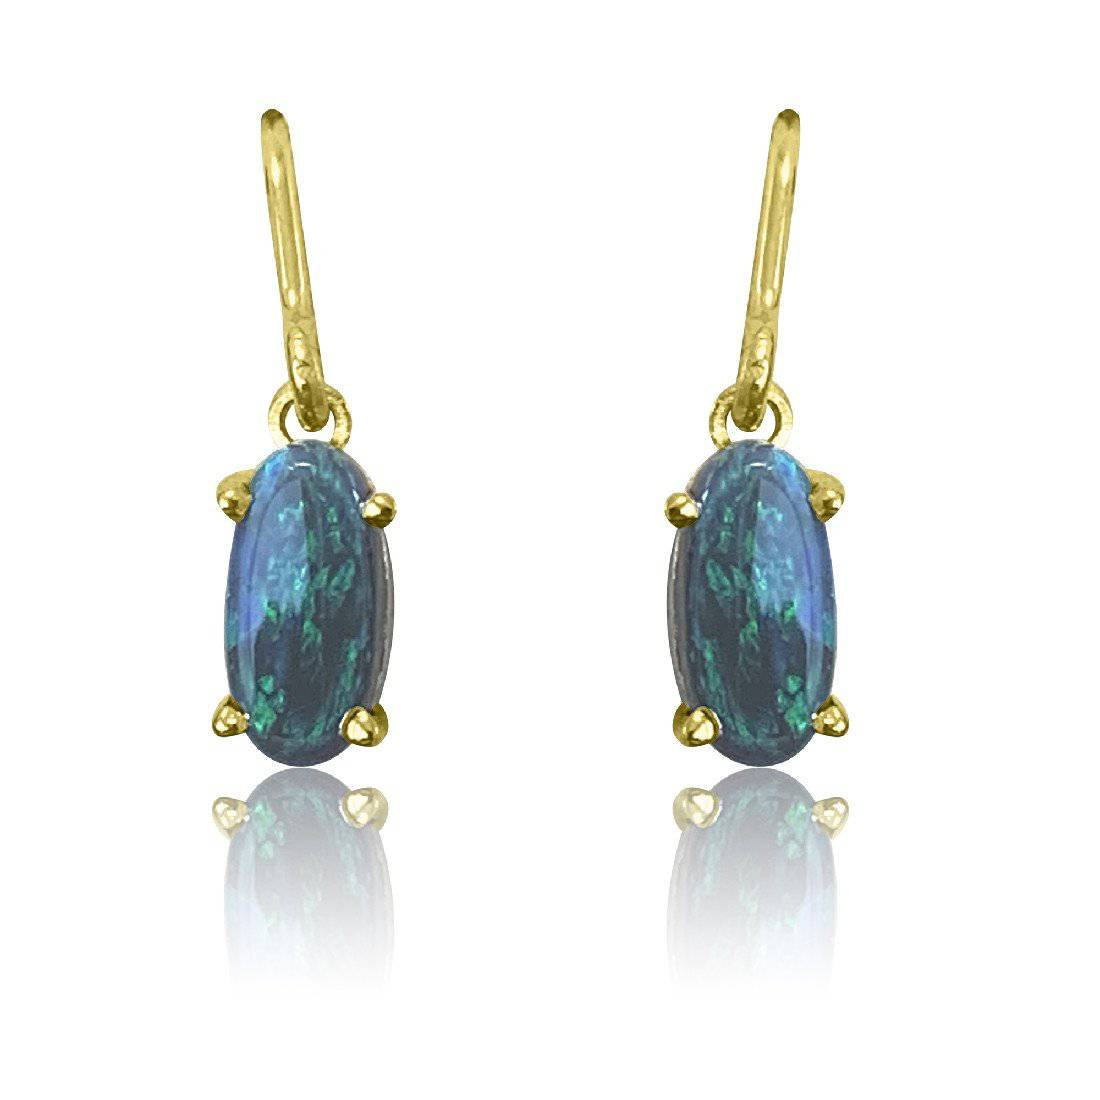 9kt Yellow Gold Black Opal earrings - Masterpiece Jewellery Opal & Gems Sydney Australia | Online Shop